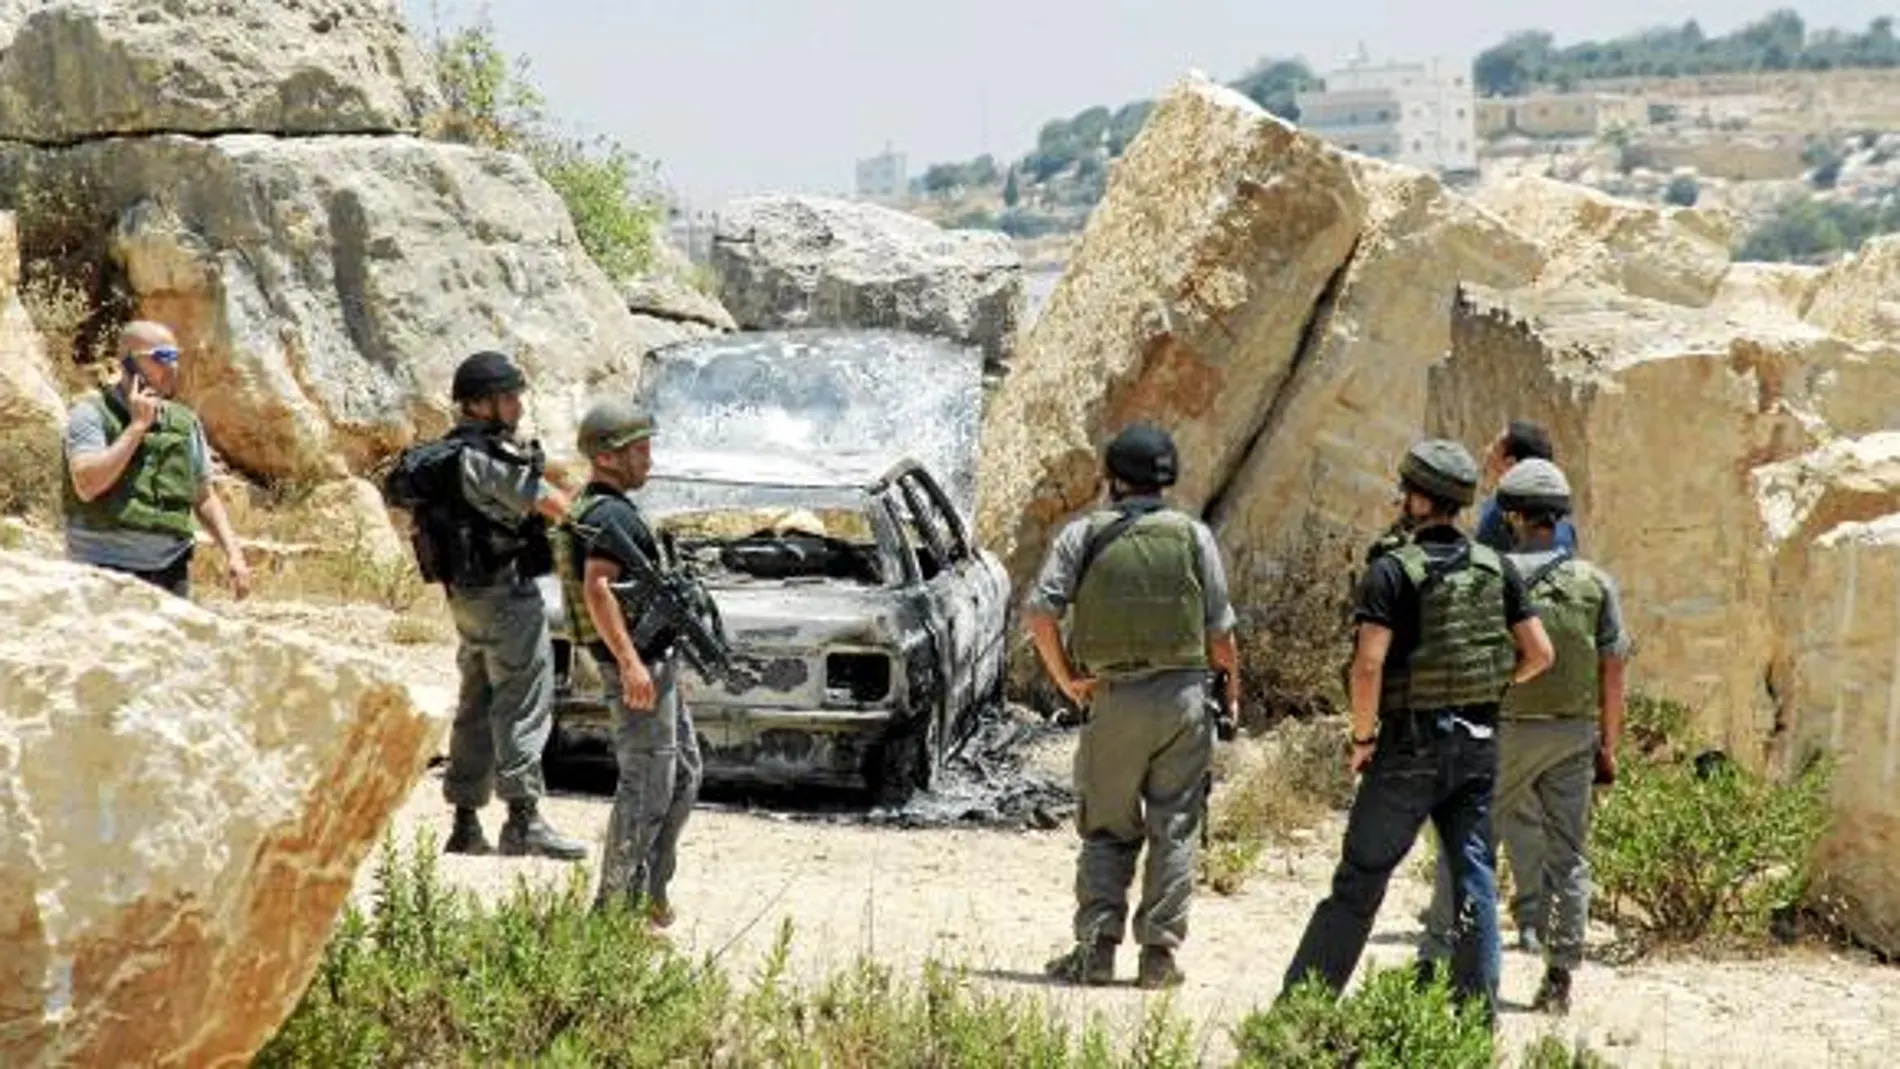 Soldados israelíes inspeccionan un automóvil calcinado en el lugar donde fue emboscada una patrulla policial, cerca de la ciudad cisjordana de Hebrón